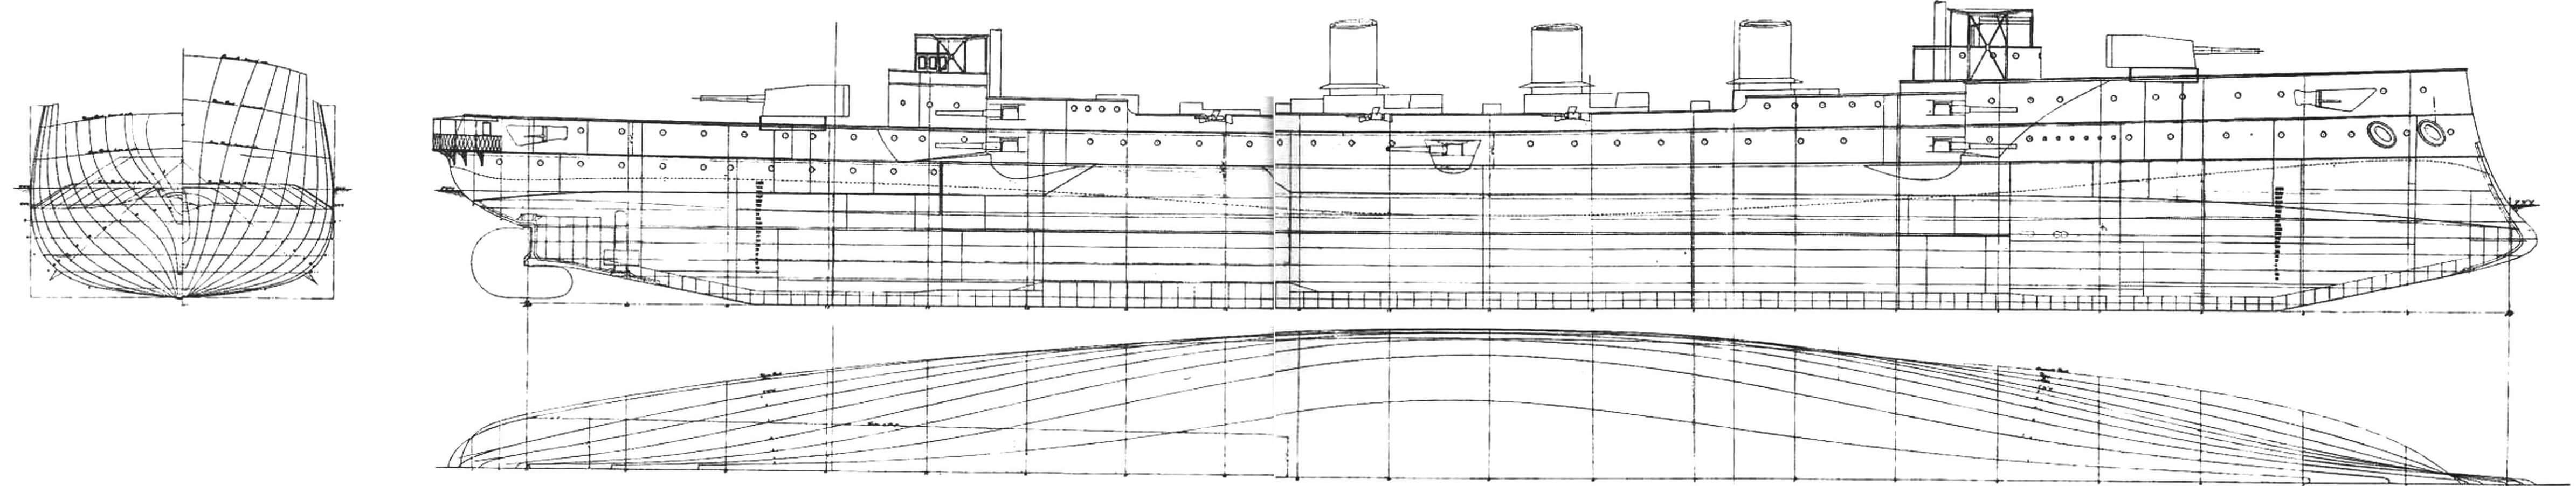 Архивная копия теоретического чертежа крейсера «Кент»